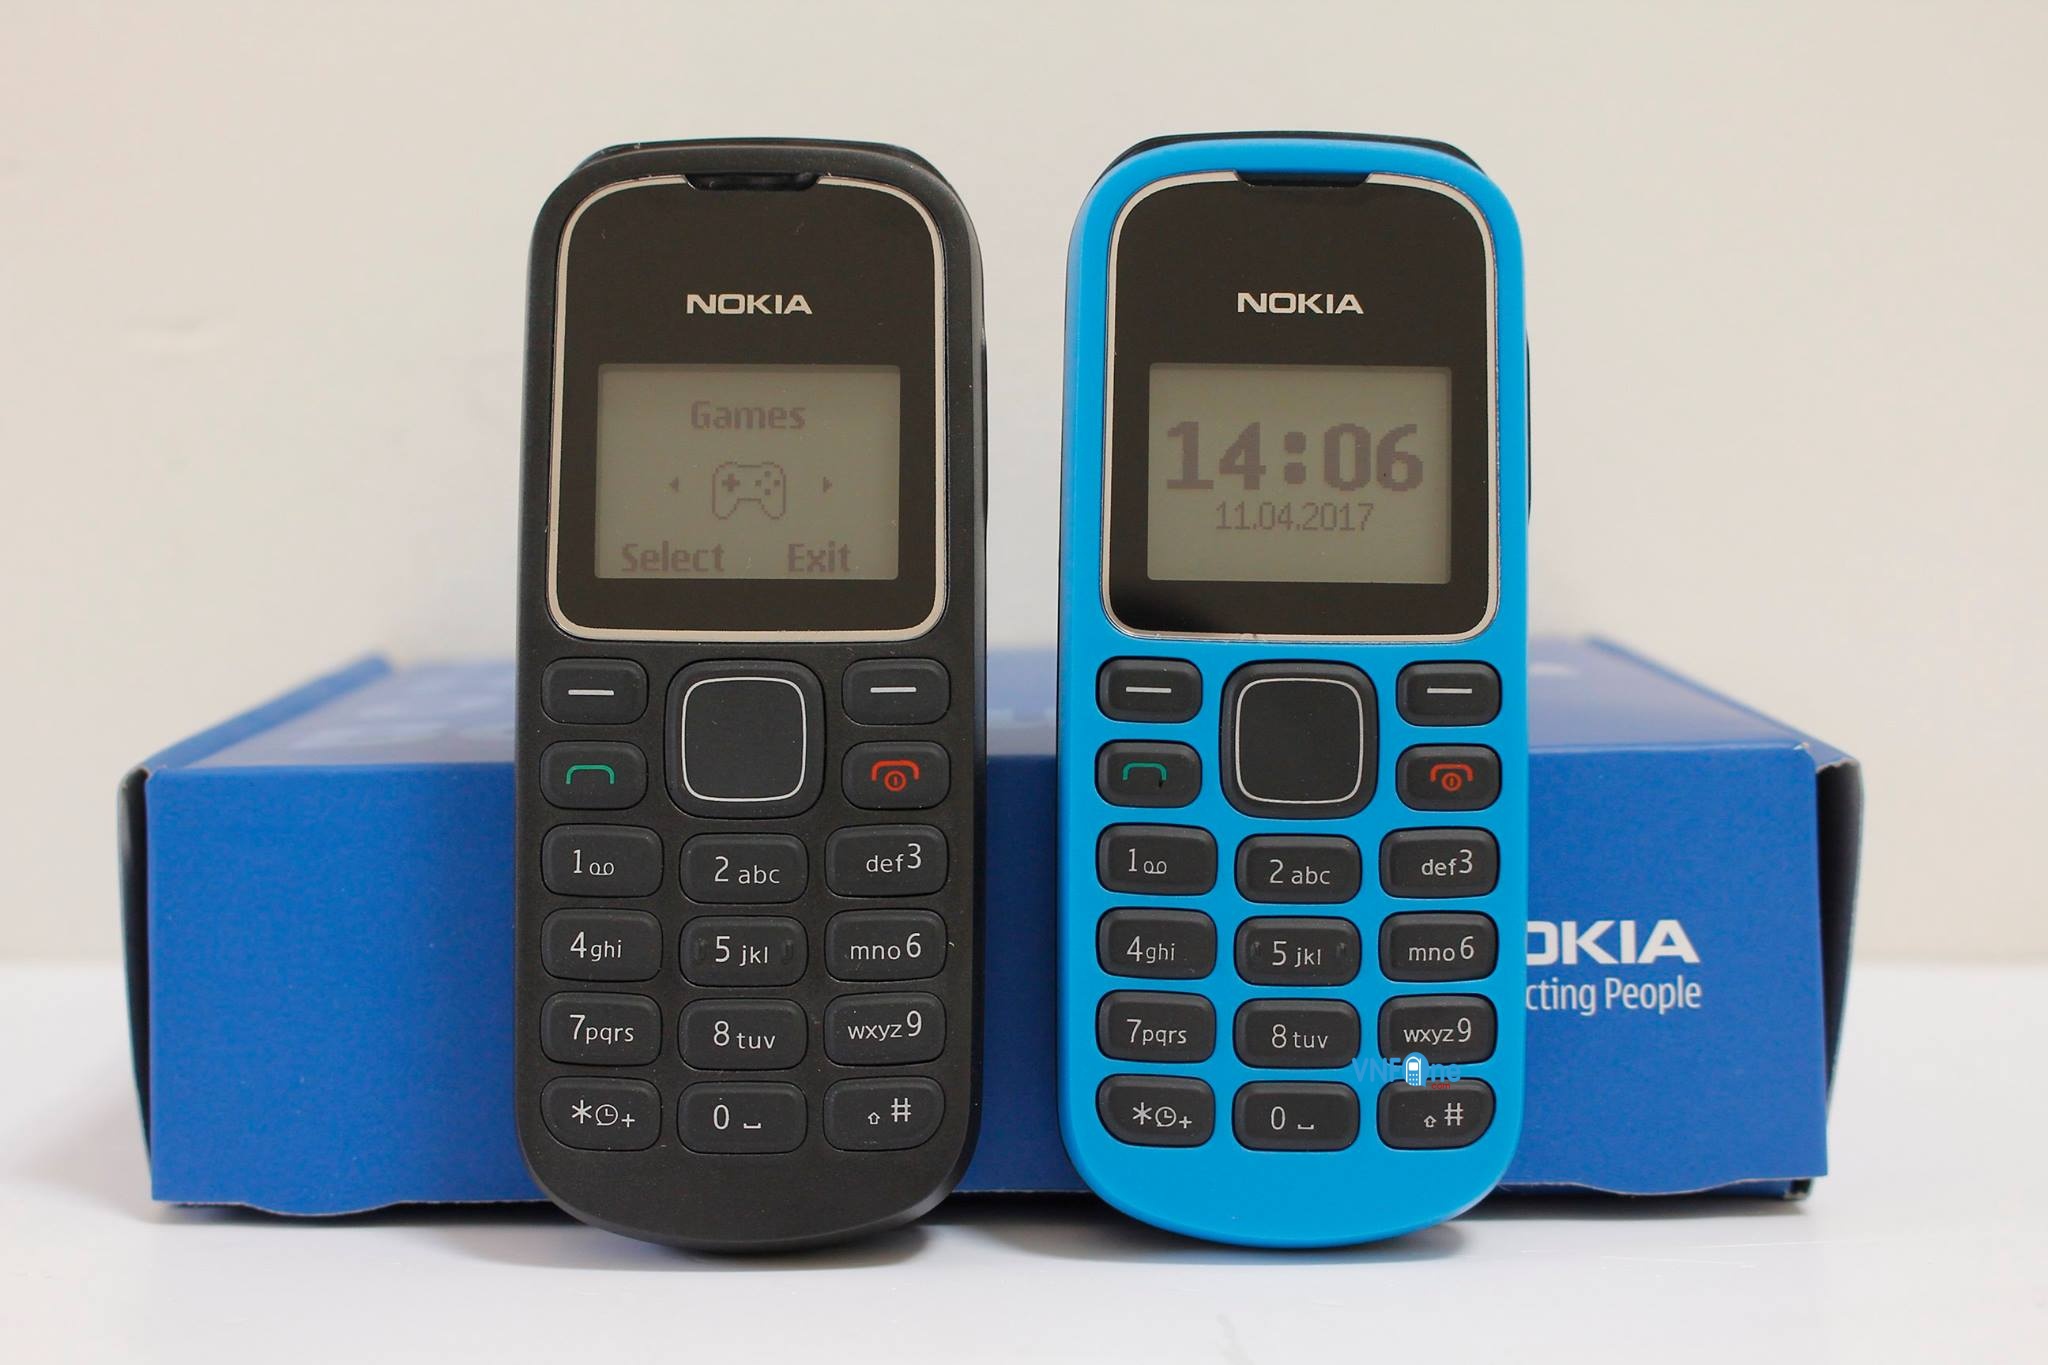 Tạo hình nền Nokia 1280 độc đáo theo ảnh của bạn | Kỹ thuật điện tử,  Iphone, Nền